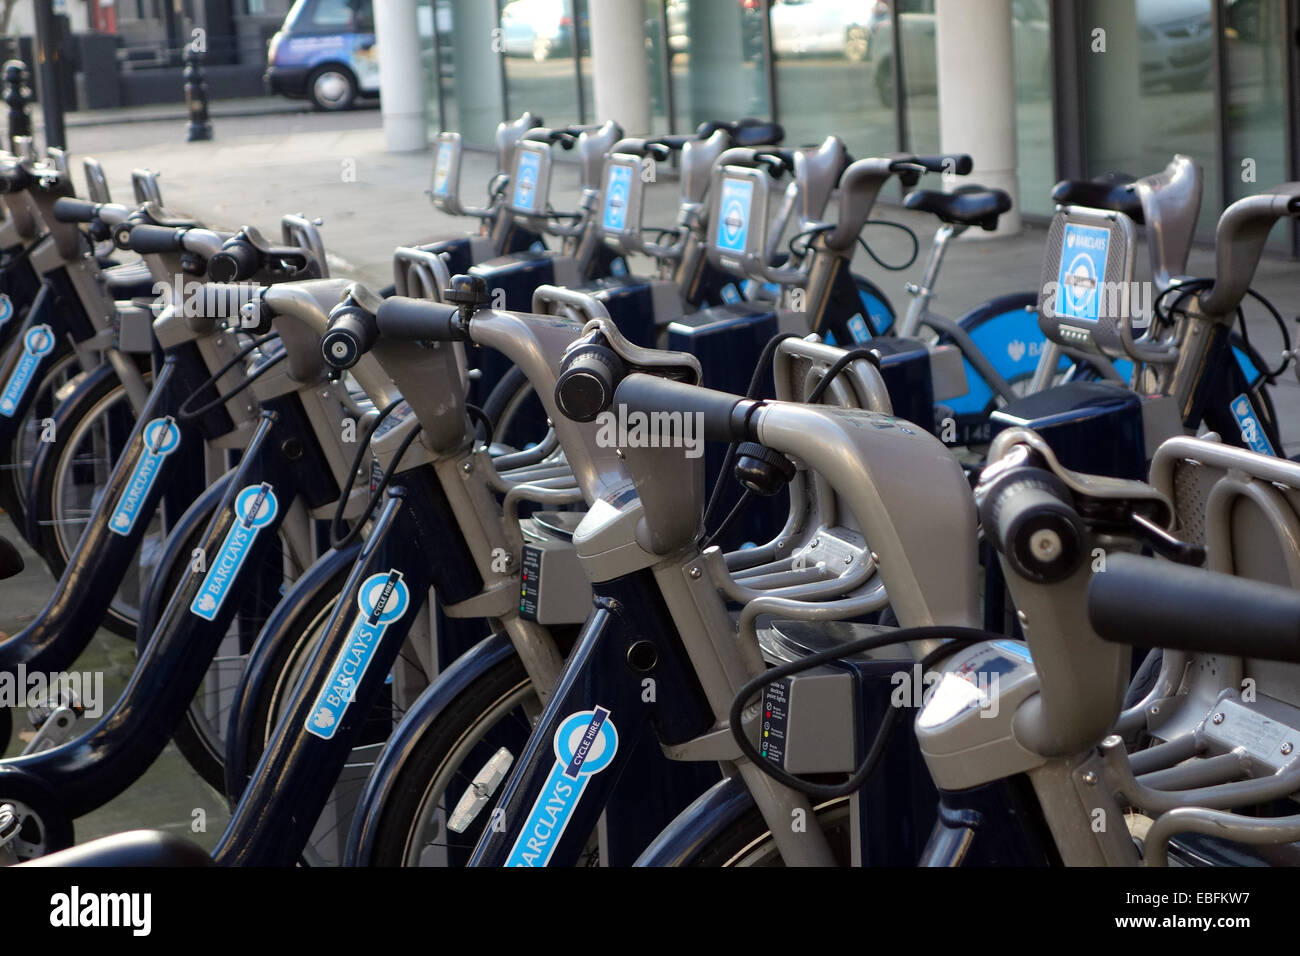 Barclays "Boris" Fahrräder aufgereiht En Echelon für das Ausschalten an einem Sonntag Morgen in London Notting Hill W11; großen schätzen, fühlen sich die f Stockfoto